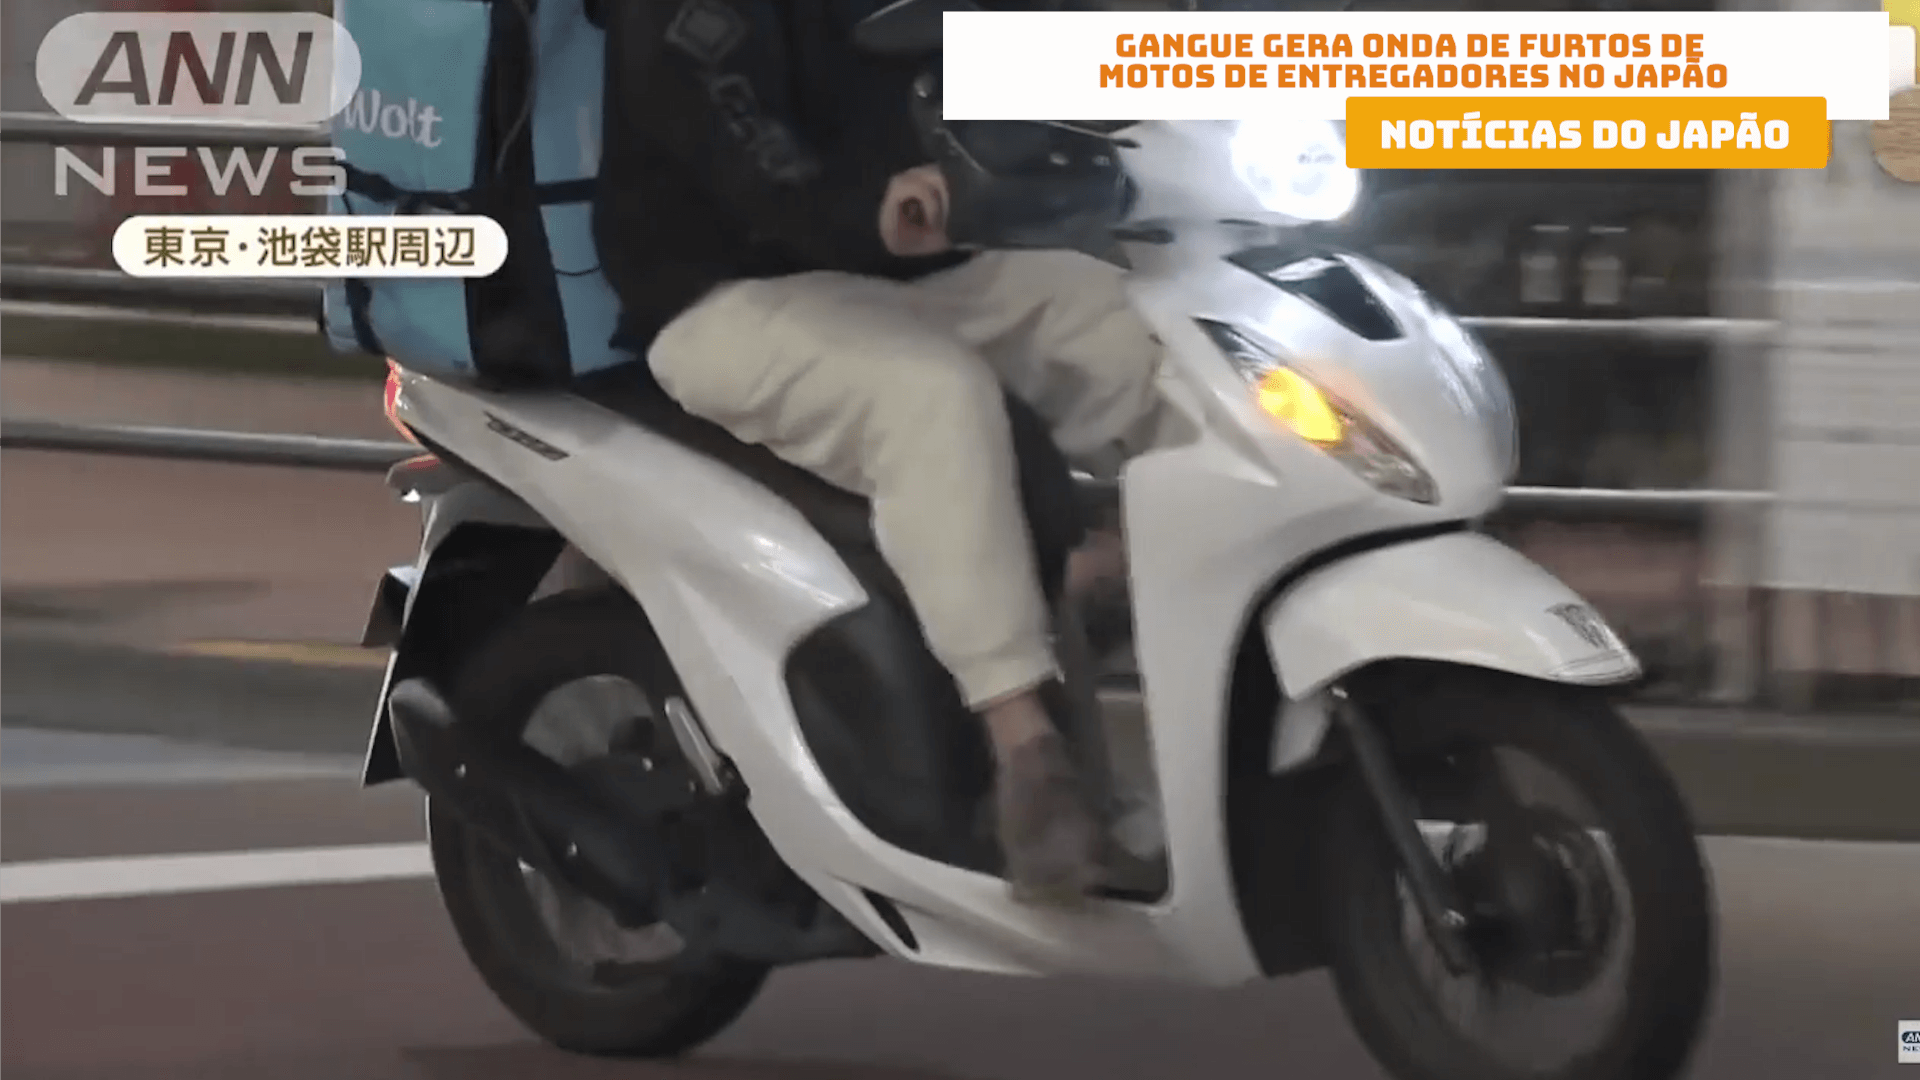 Gangue gera onda de furtos de motos de entregadores no Japão